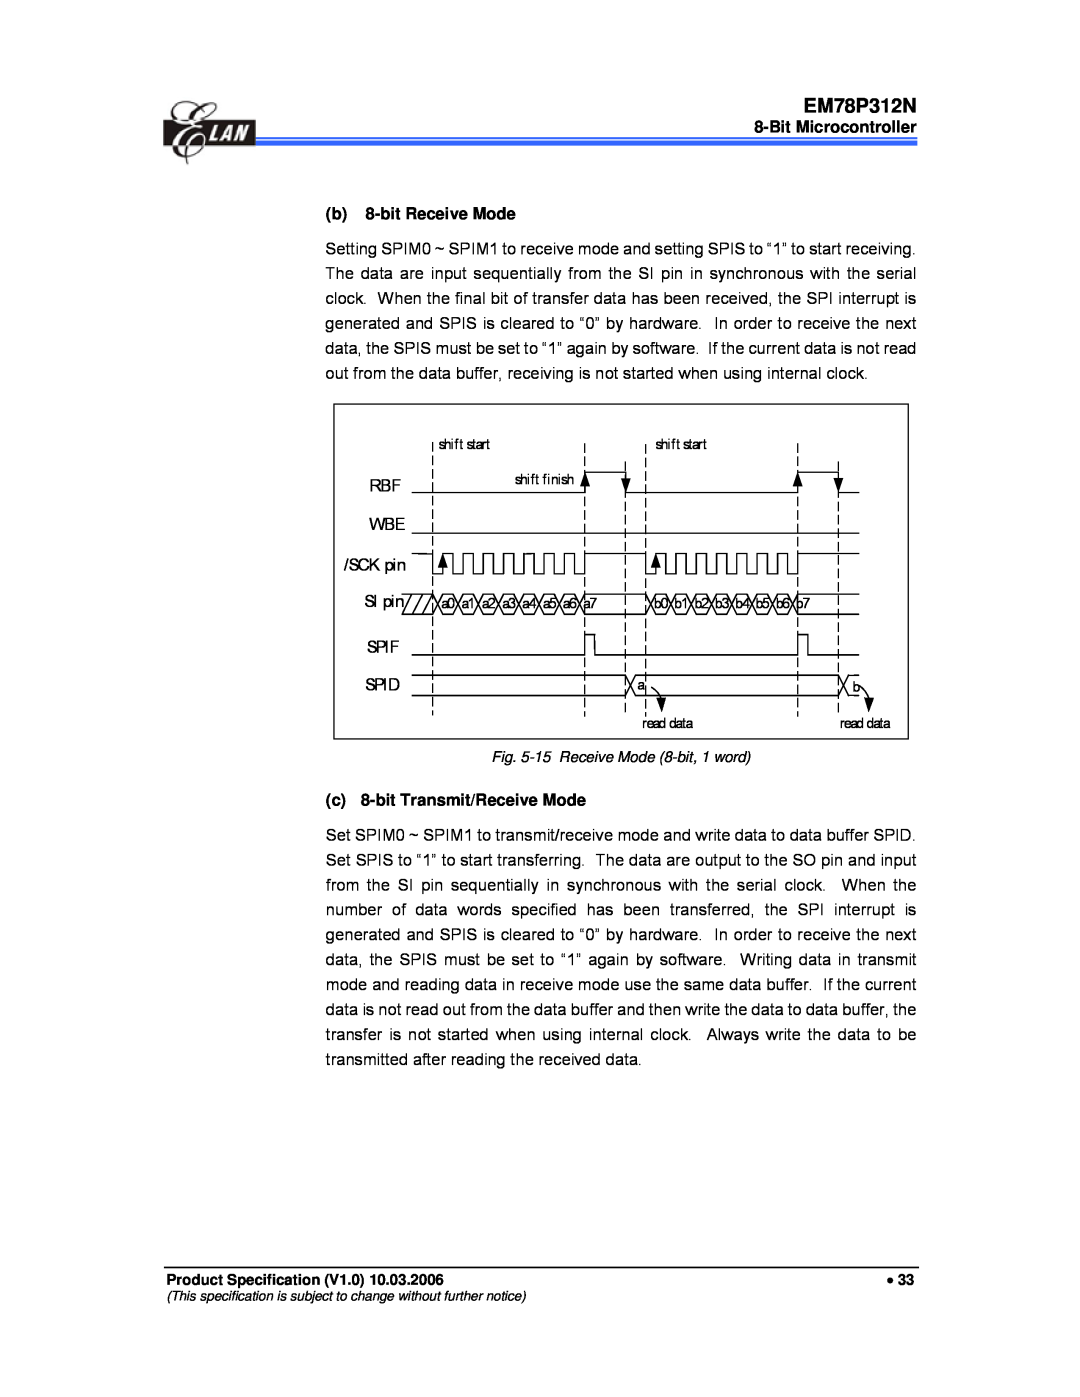 IBM EM78P312N manual Bit Microcontroller b 8-bit Receive Mode, c 8-bit Transmit/Receive Mode 